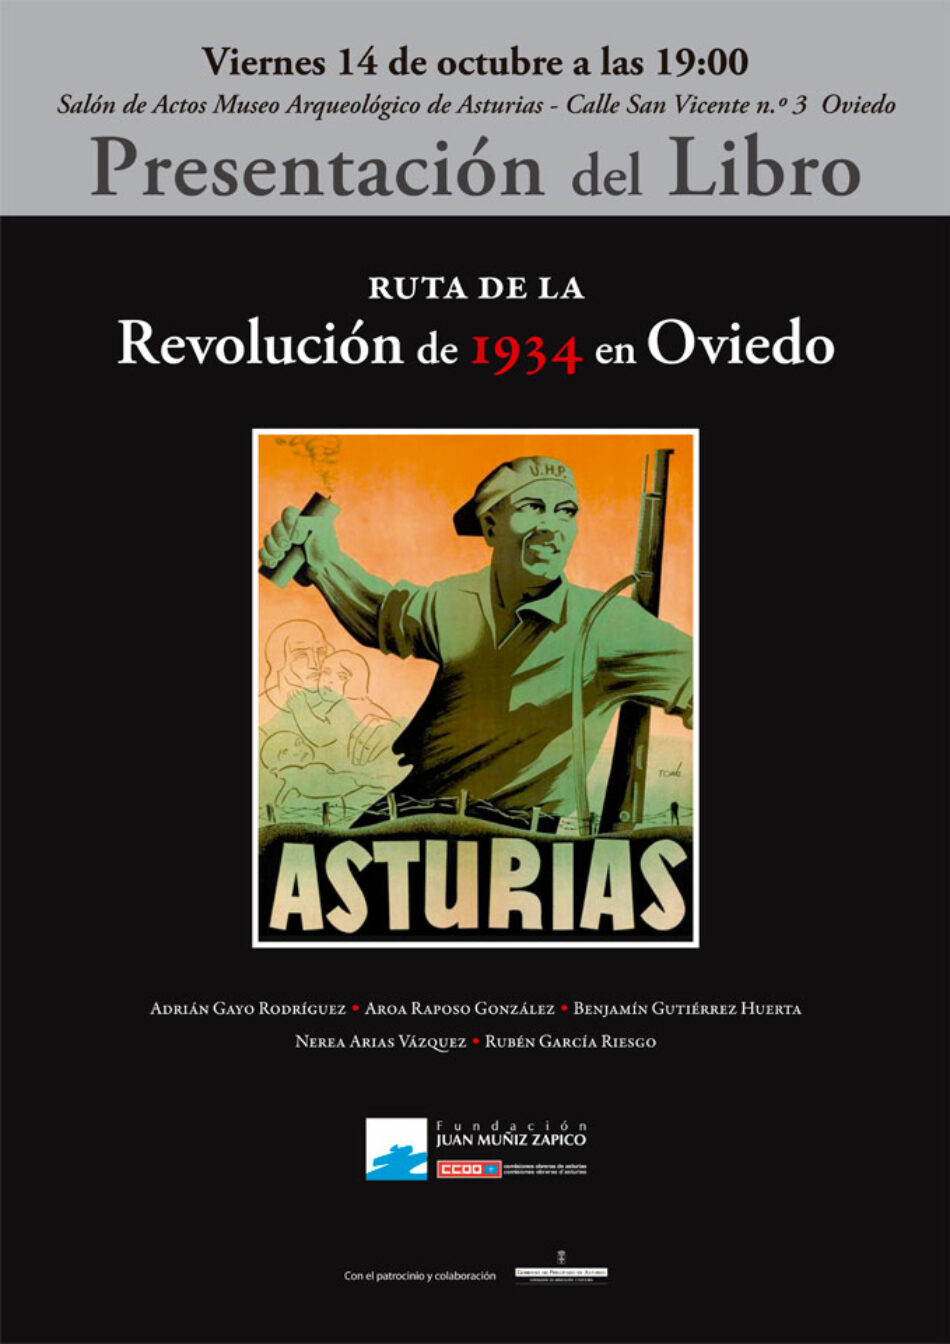 Ruta de la Revolución de 1934 en Oviedo